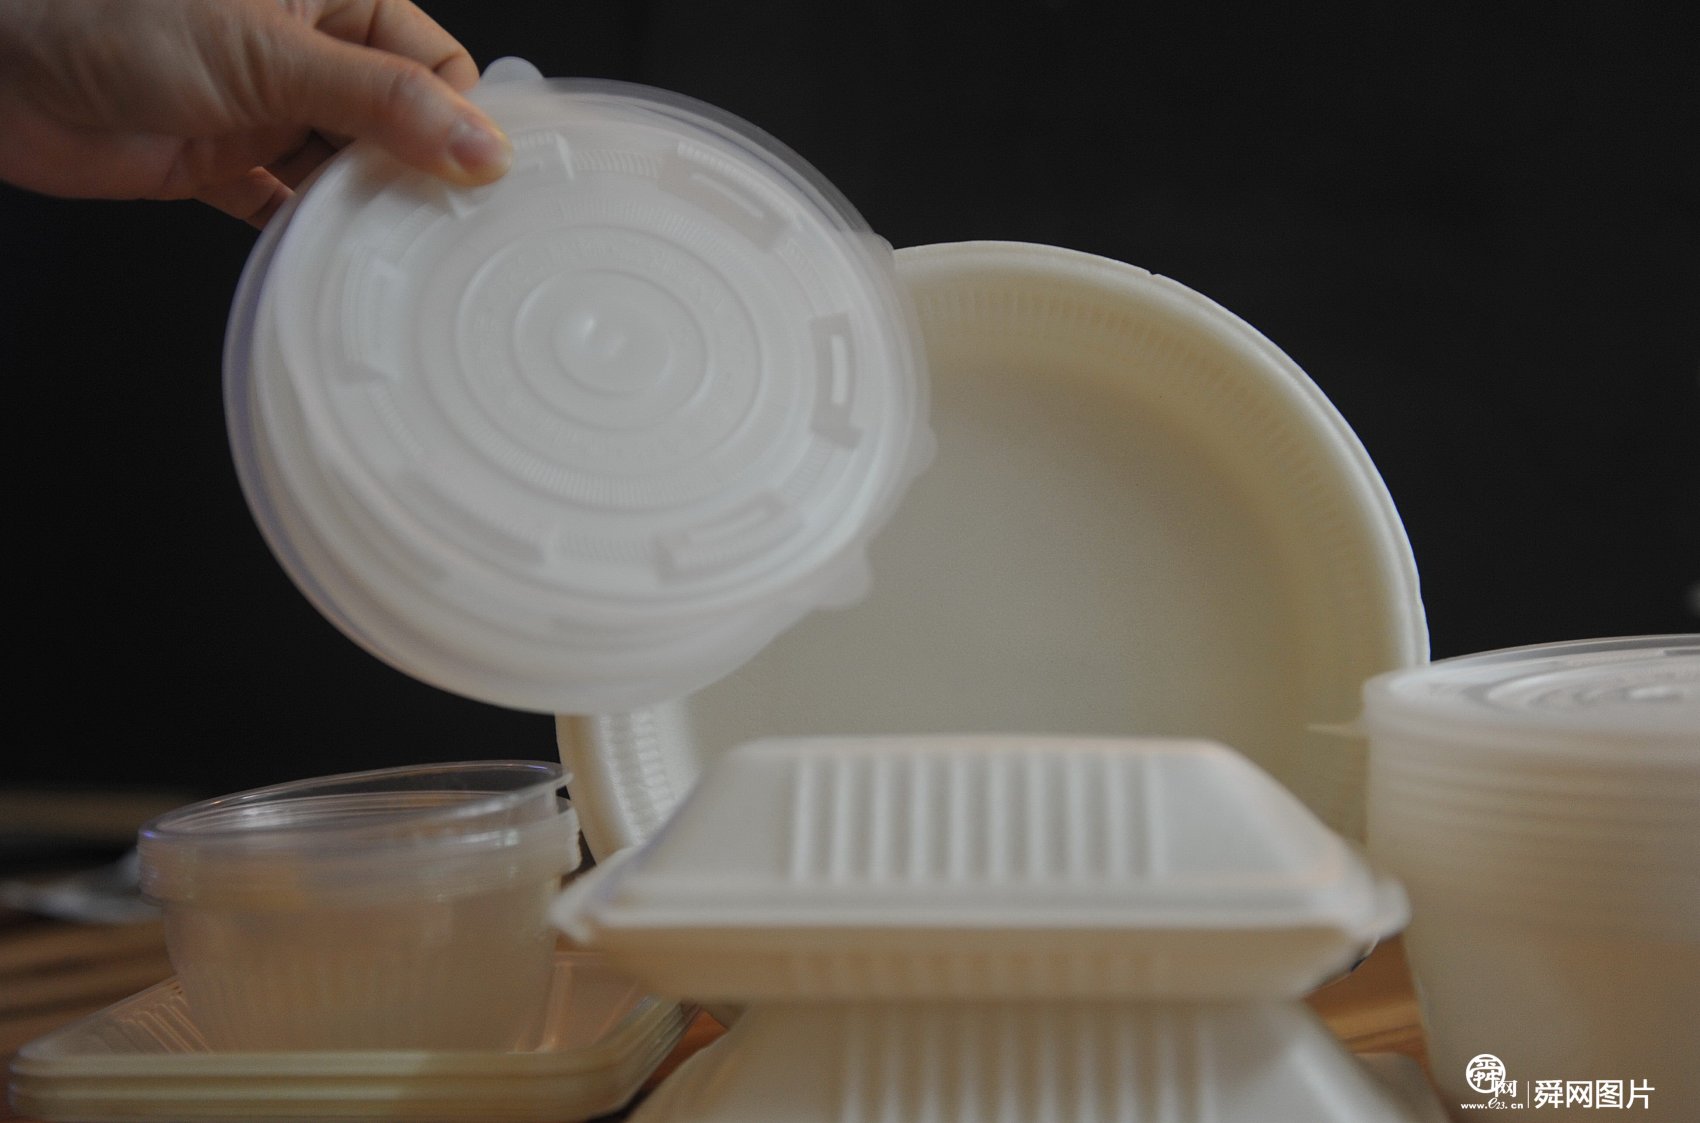 山东发文加强塑料污染治理 地级以上城市餐饮业禁用不可降解一次性塑料餐具